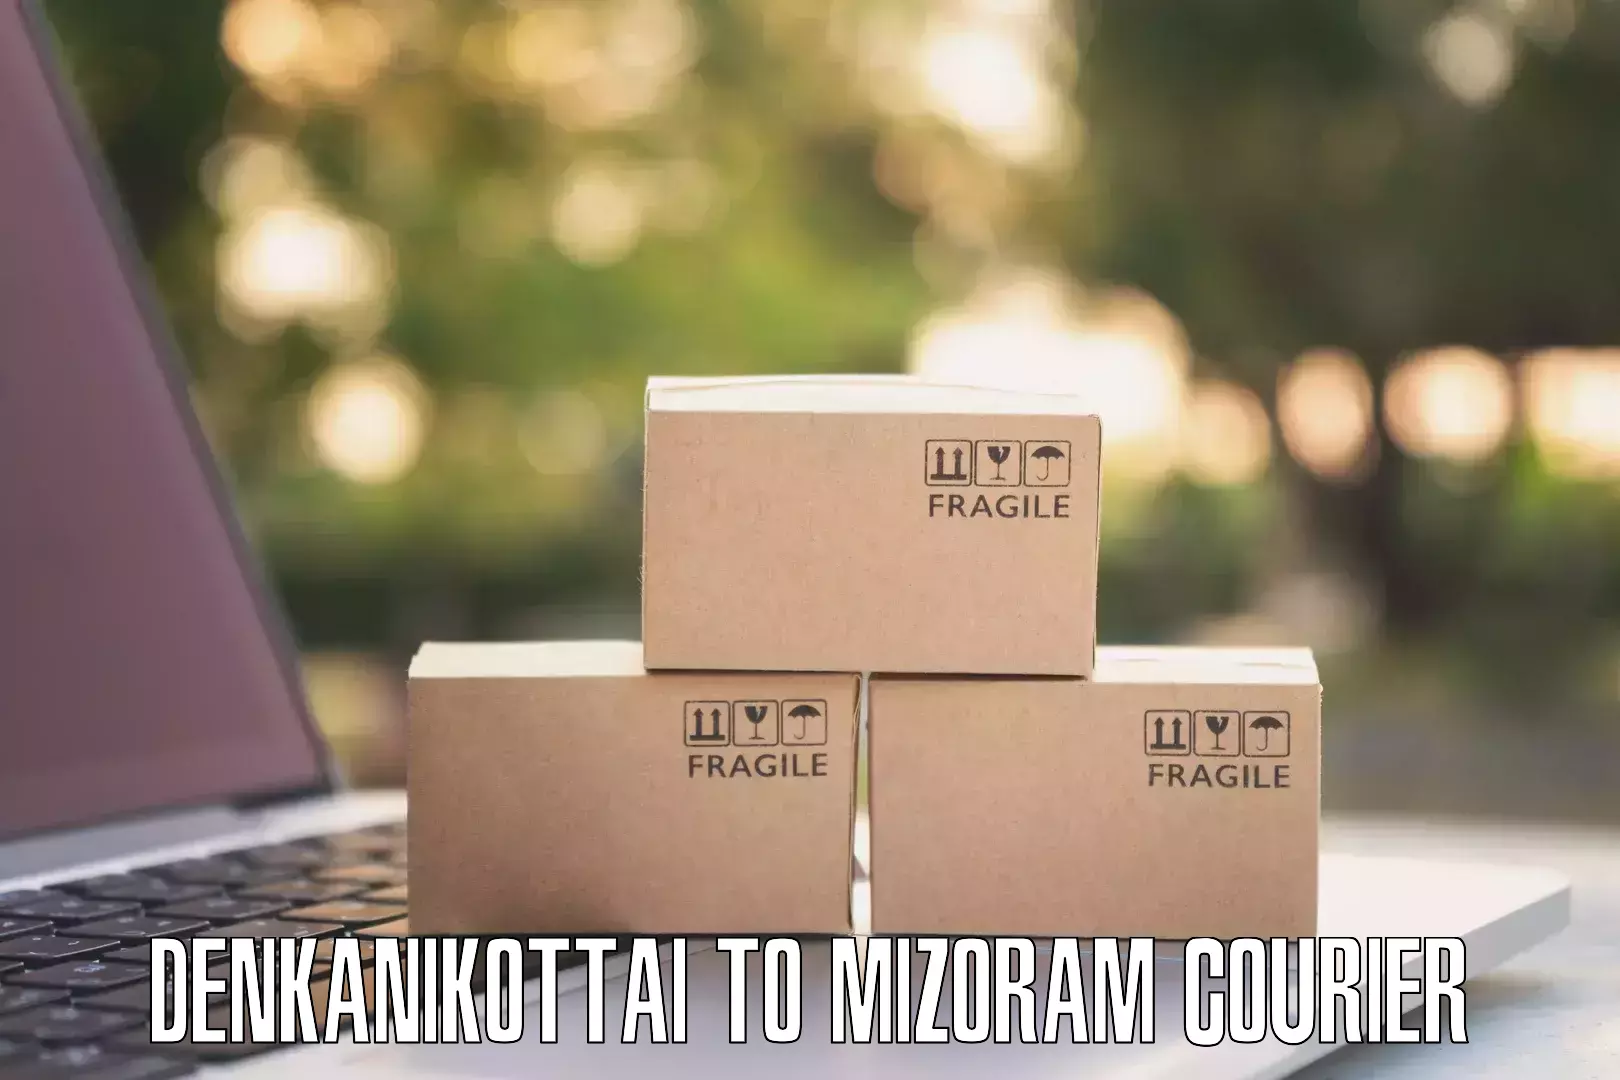 Tailored freight services Denkanikottai to NIT Aizawl